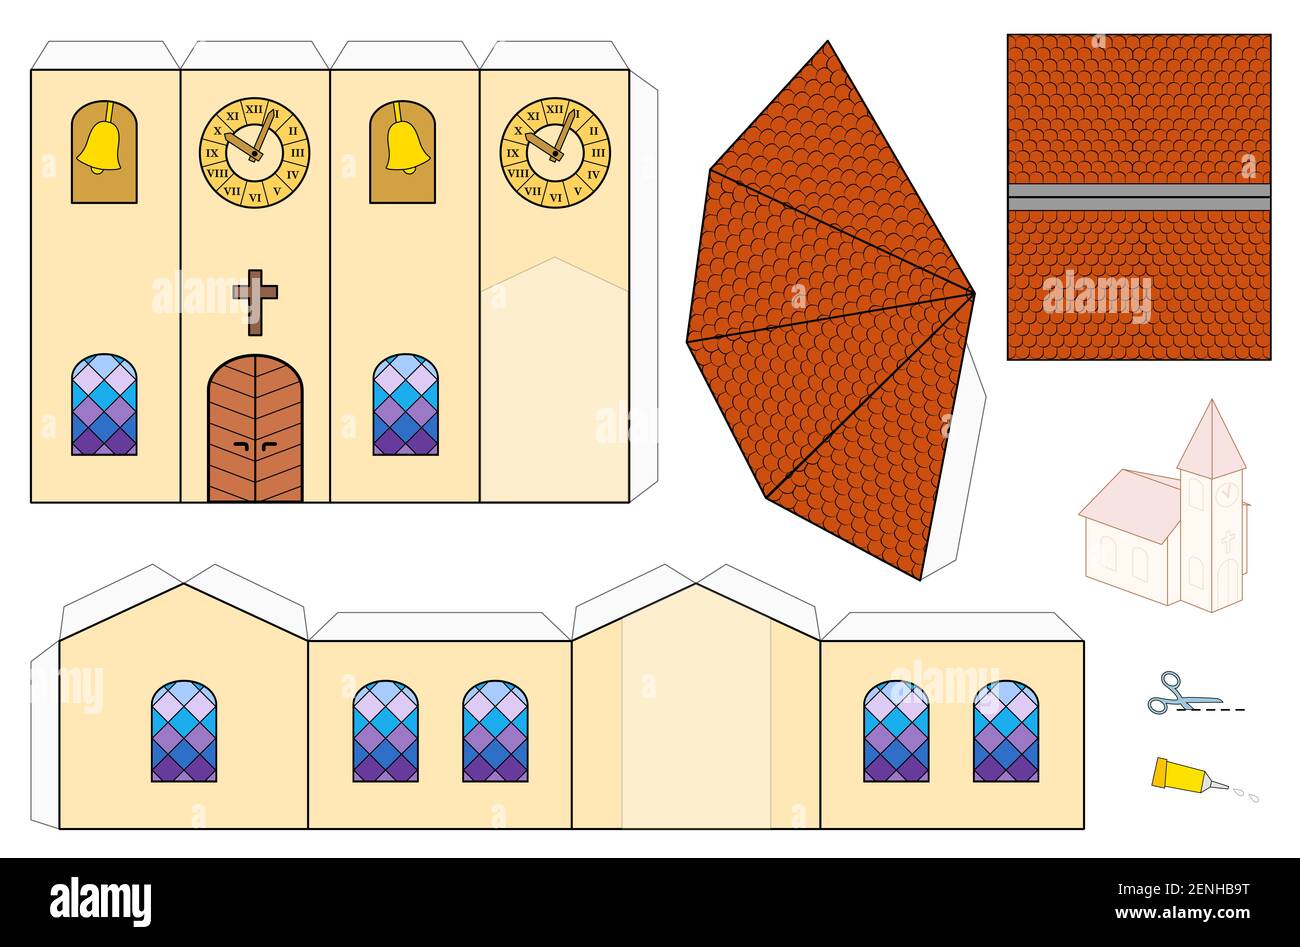 Kirche Vorlage, Papier Handwerk Modell. Ausschnittblech für die Herstellung einer einfachen modellkirche im maßstab 1:3D mit bunten Fenstern, Glockenturm, Turmuhr und Schindeln. Stockfoto